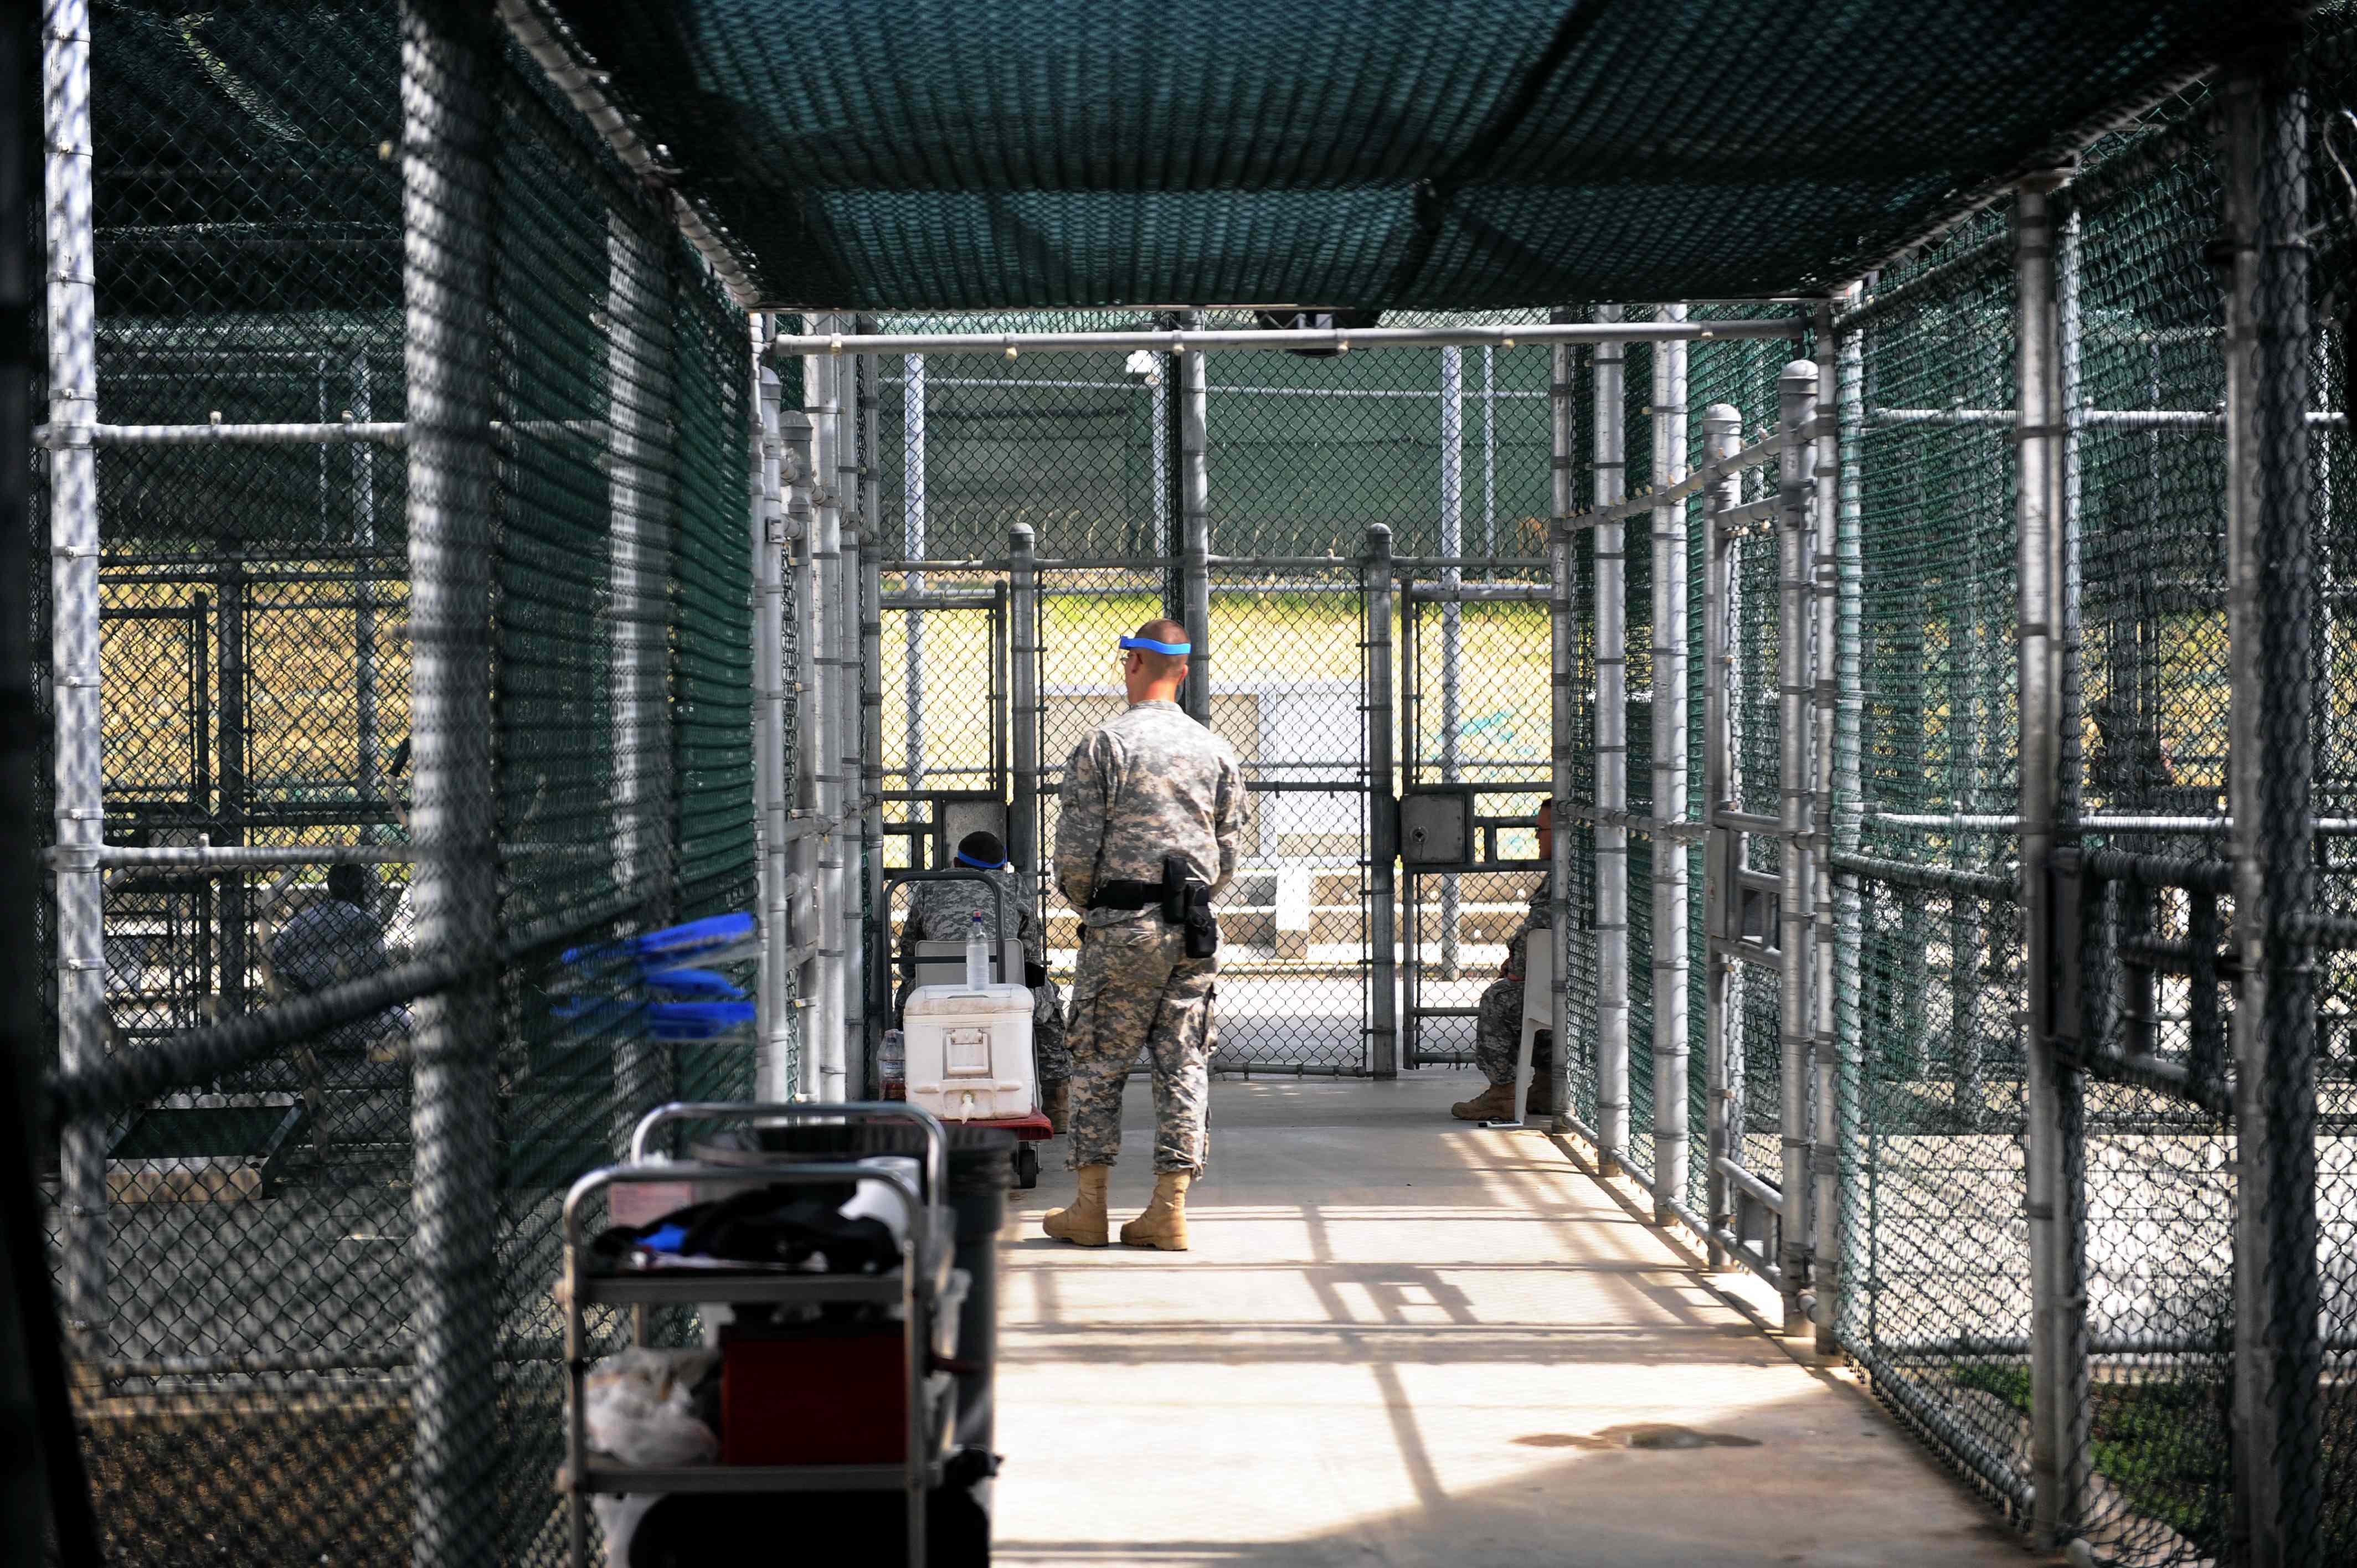 La base navale di Guantanamo ospita anche una prigione militare (Infophoto)